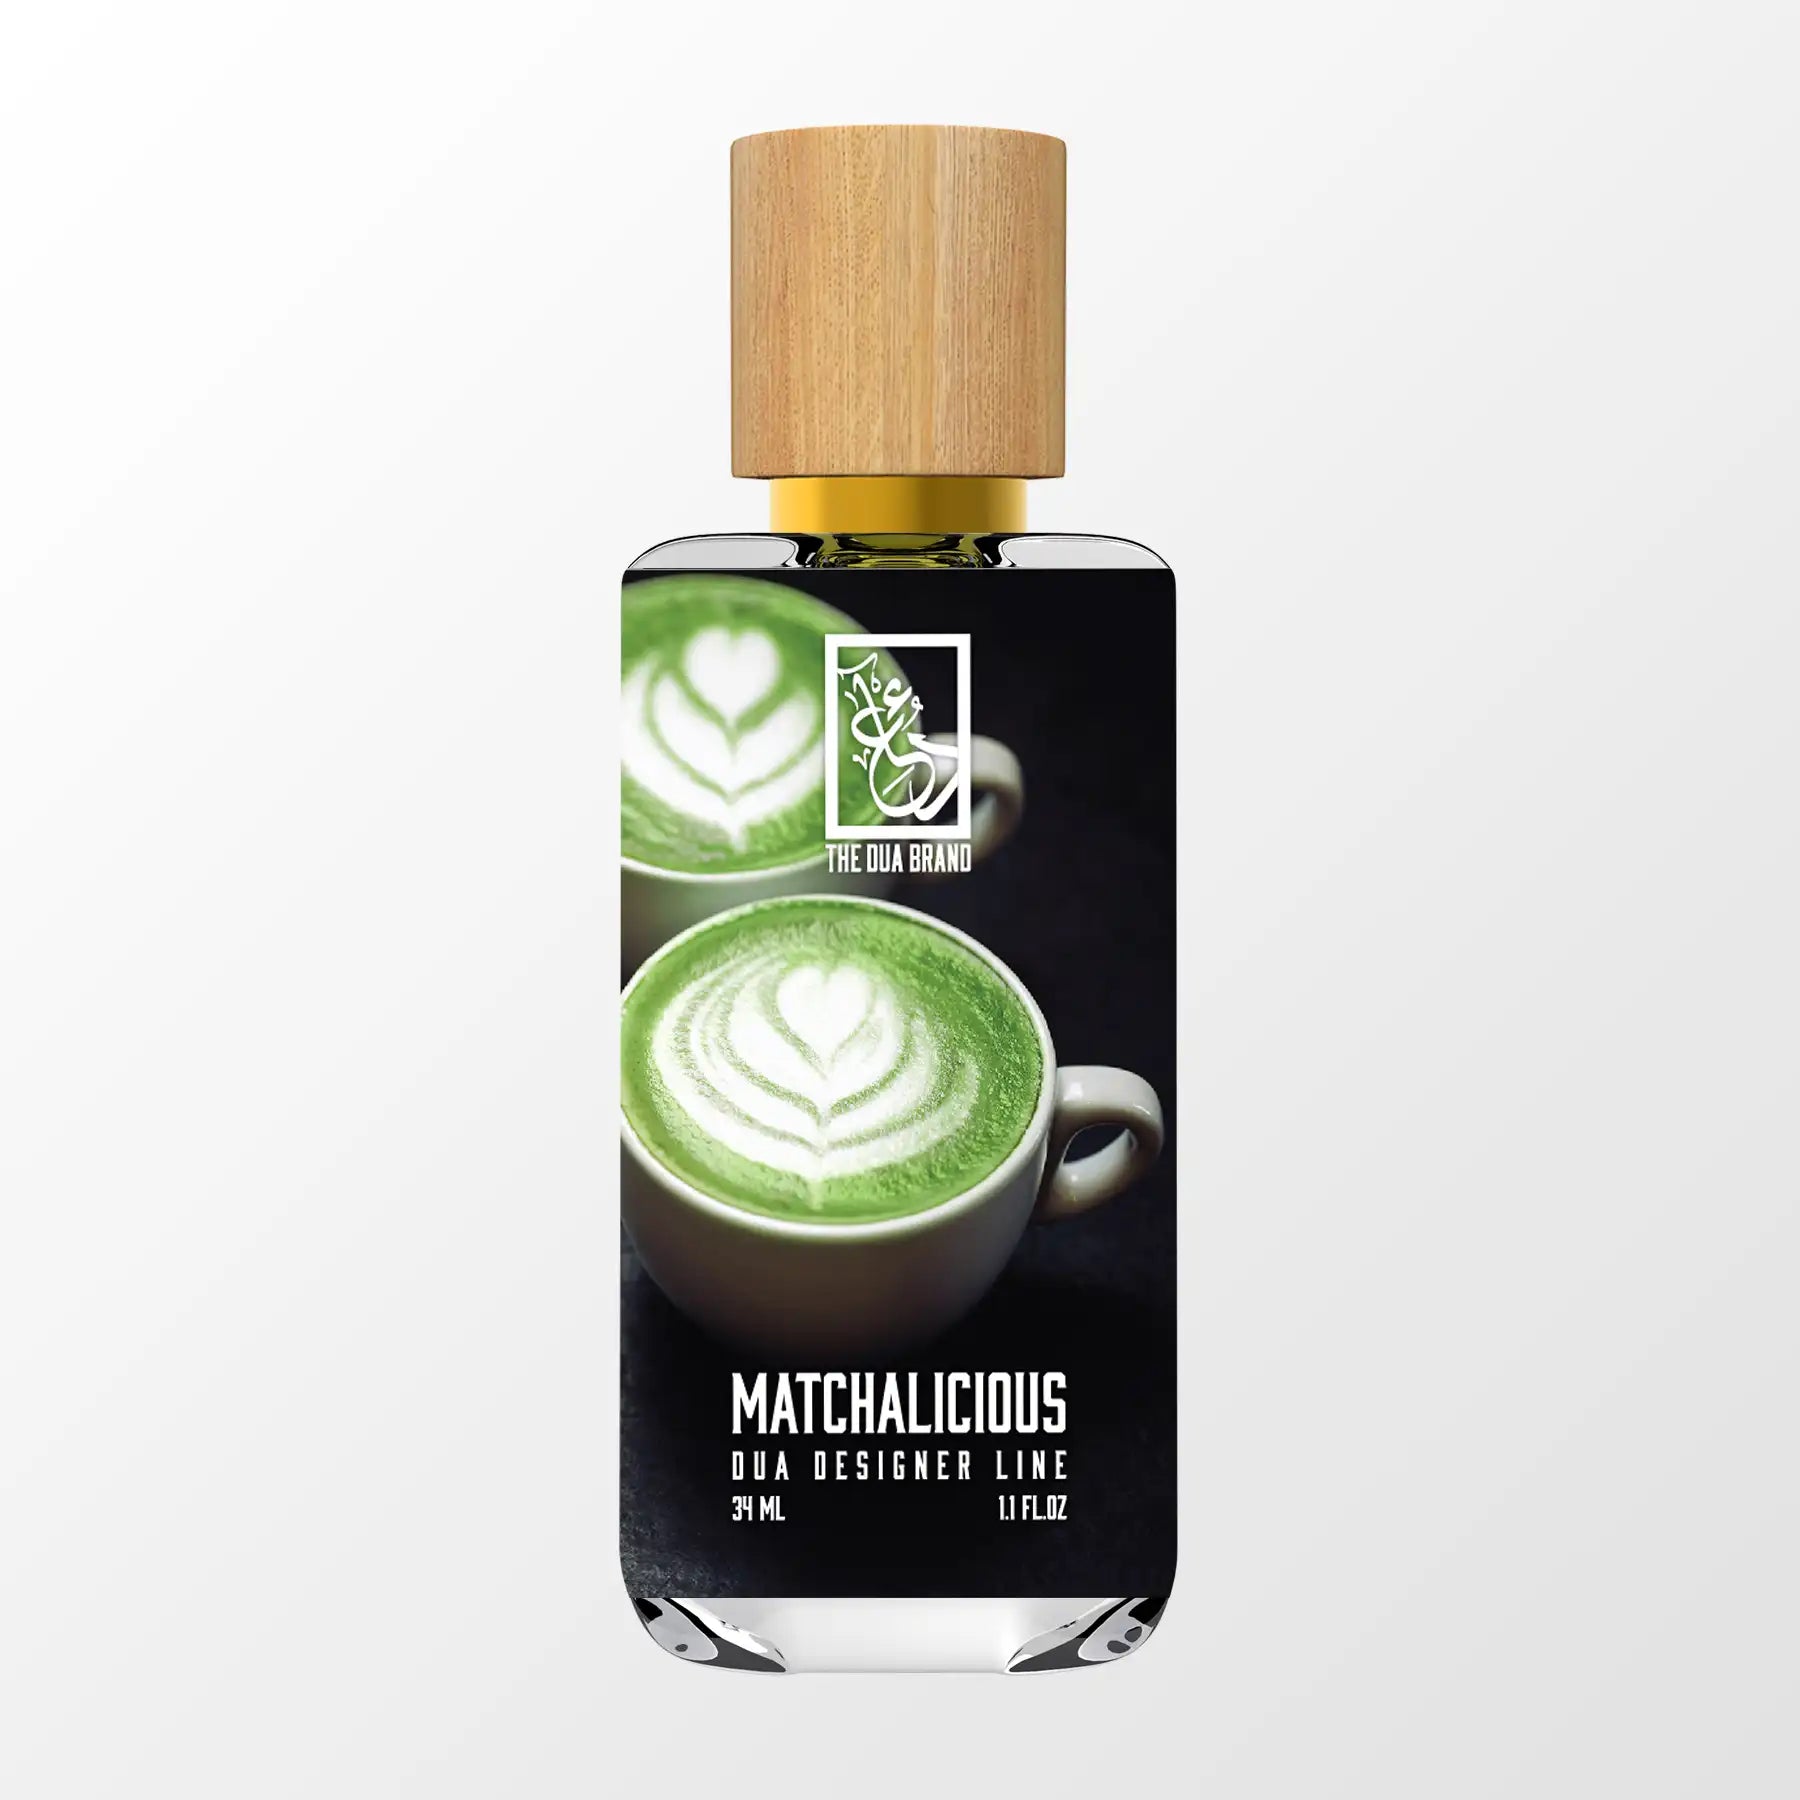 Matcha Vanille - DUA FRAGRANCES - Inspired by Nette Thé Vanille - Unisex  Perfume - 34ml/1.1 FL OZ - Extrait De Parfum